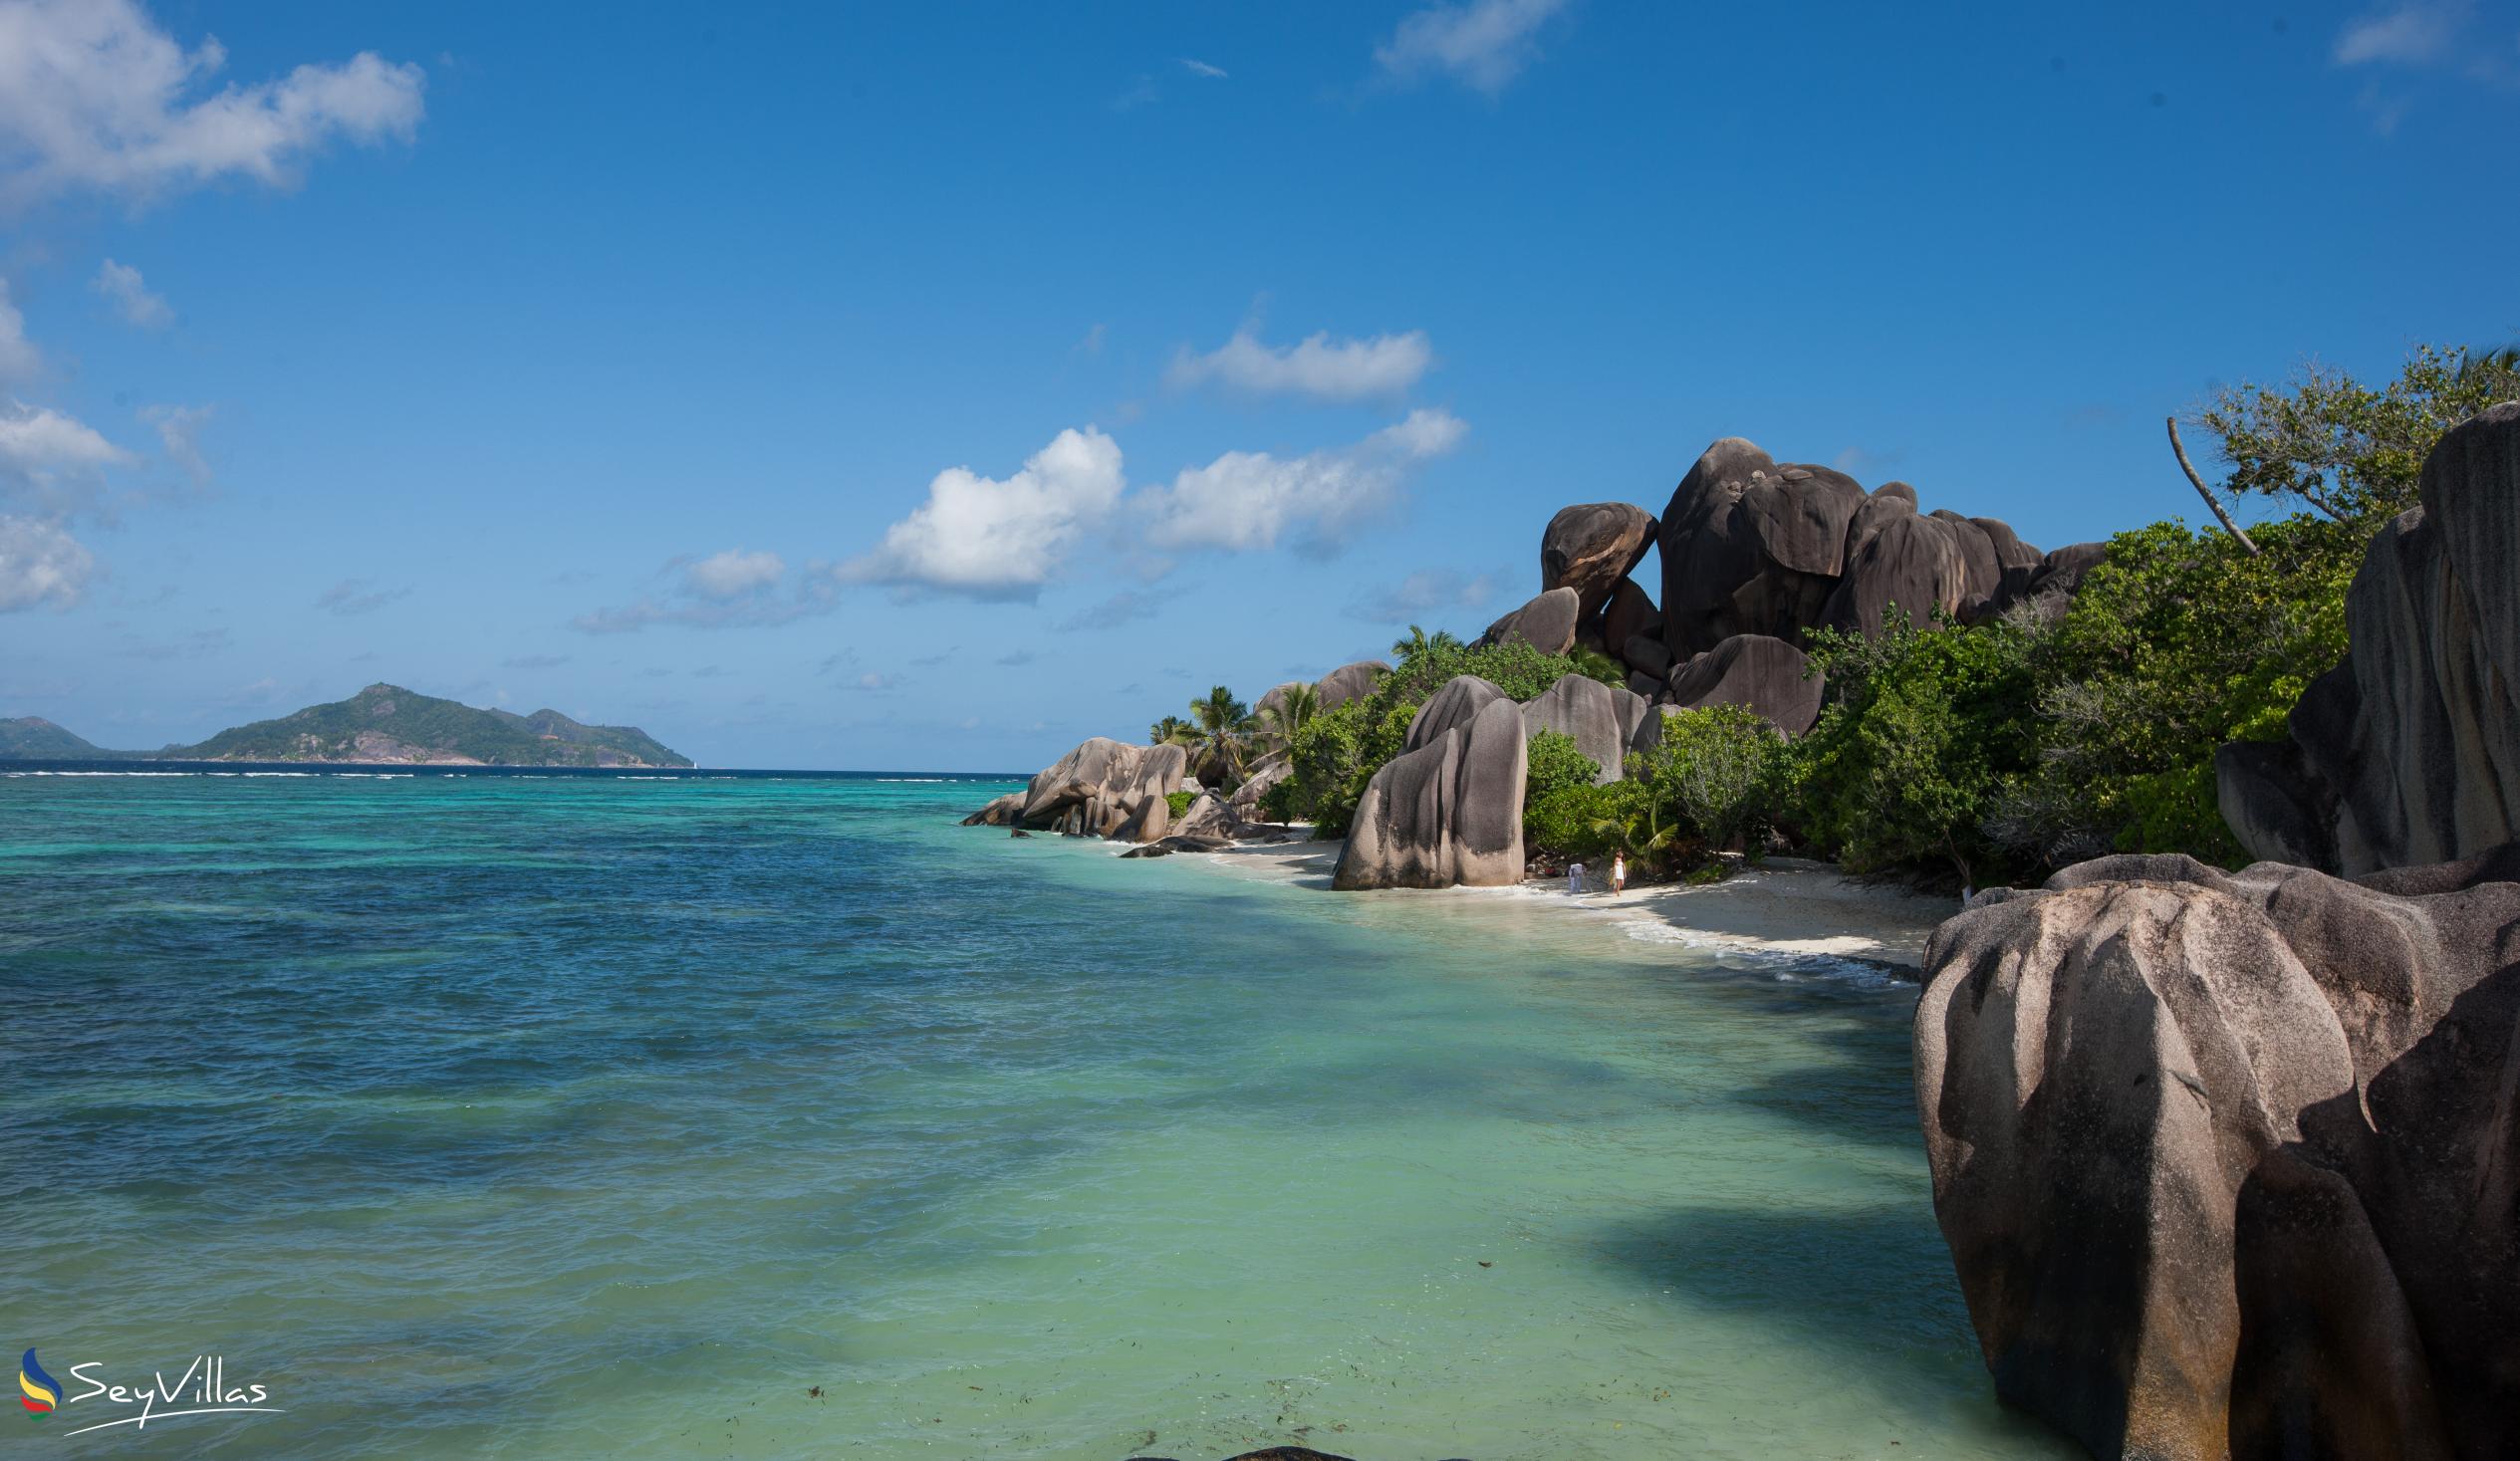 Foto 43: Pension Fidele - Plages - La Digue (Seychelles)